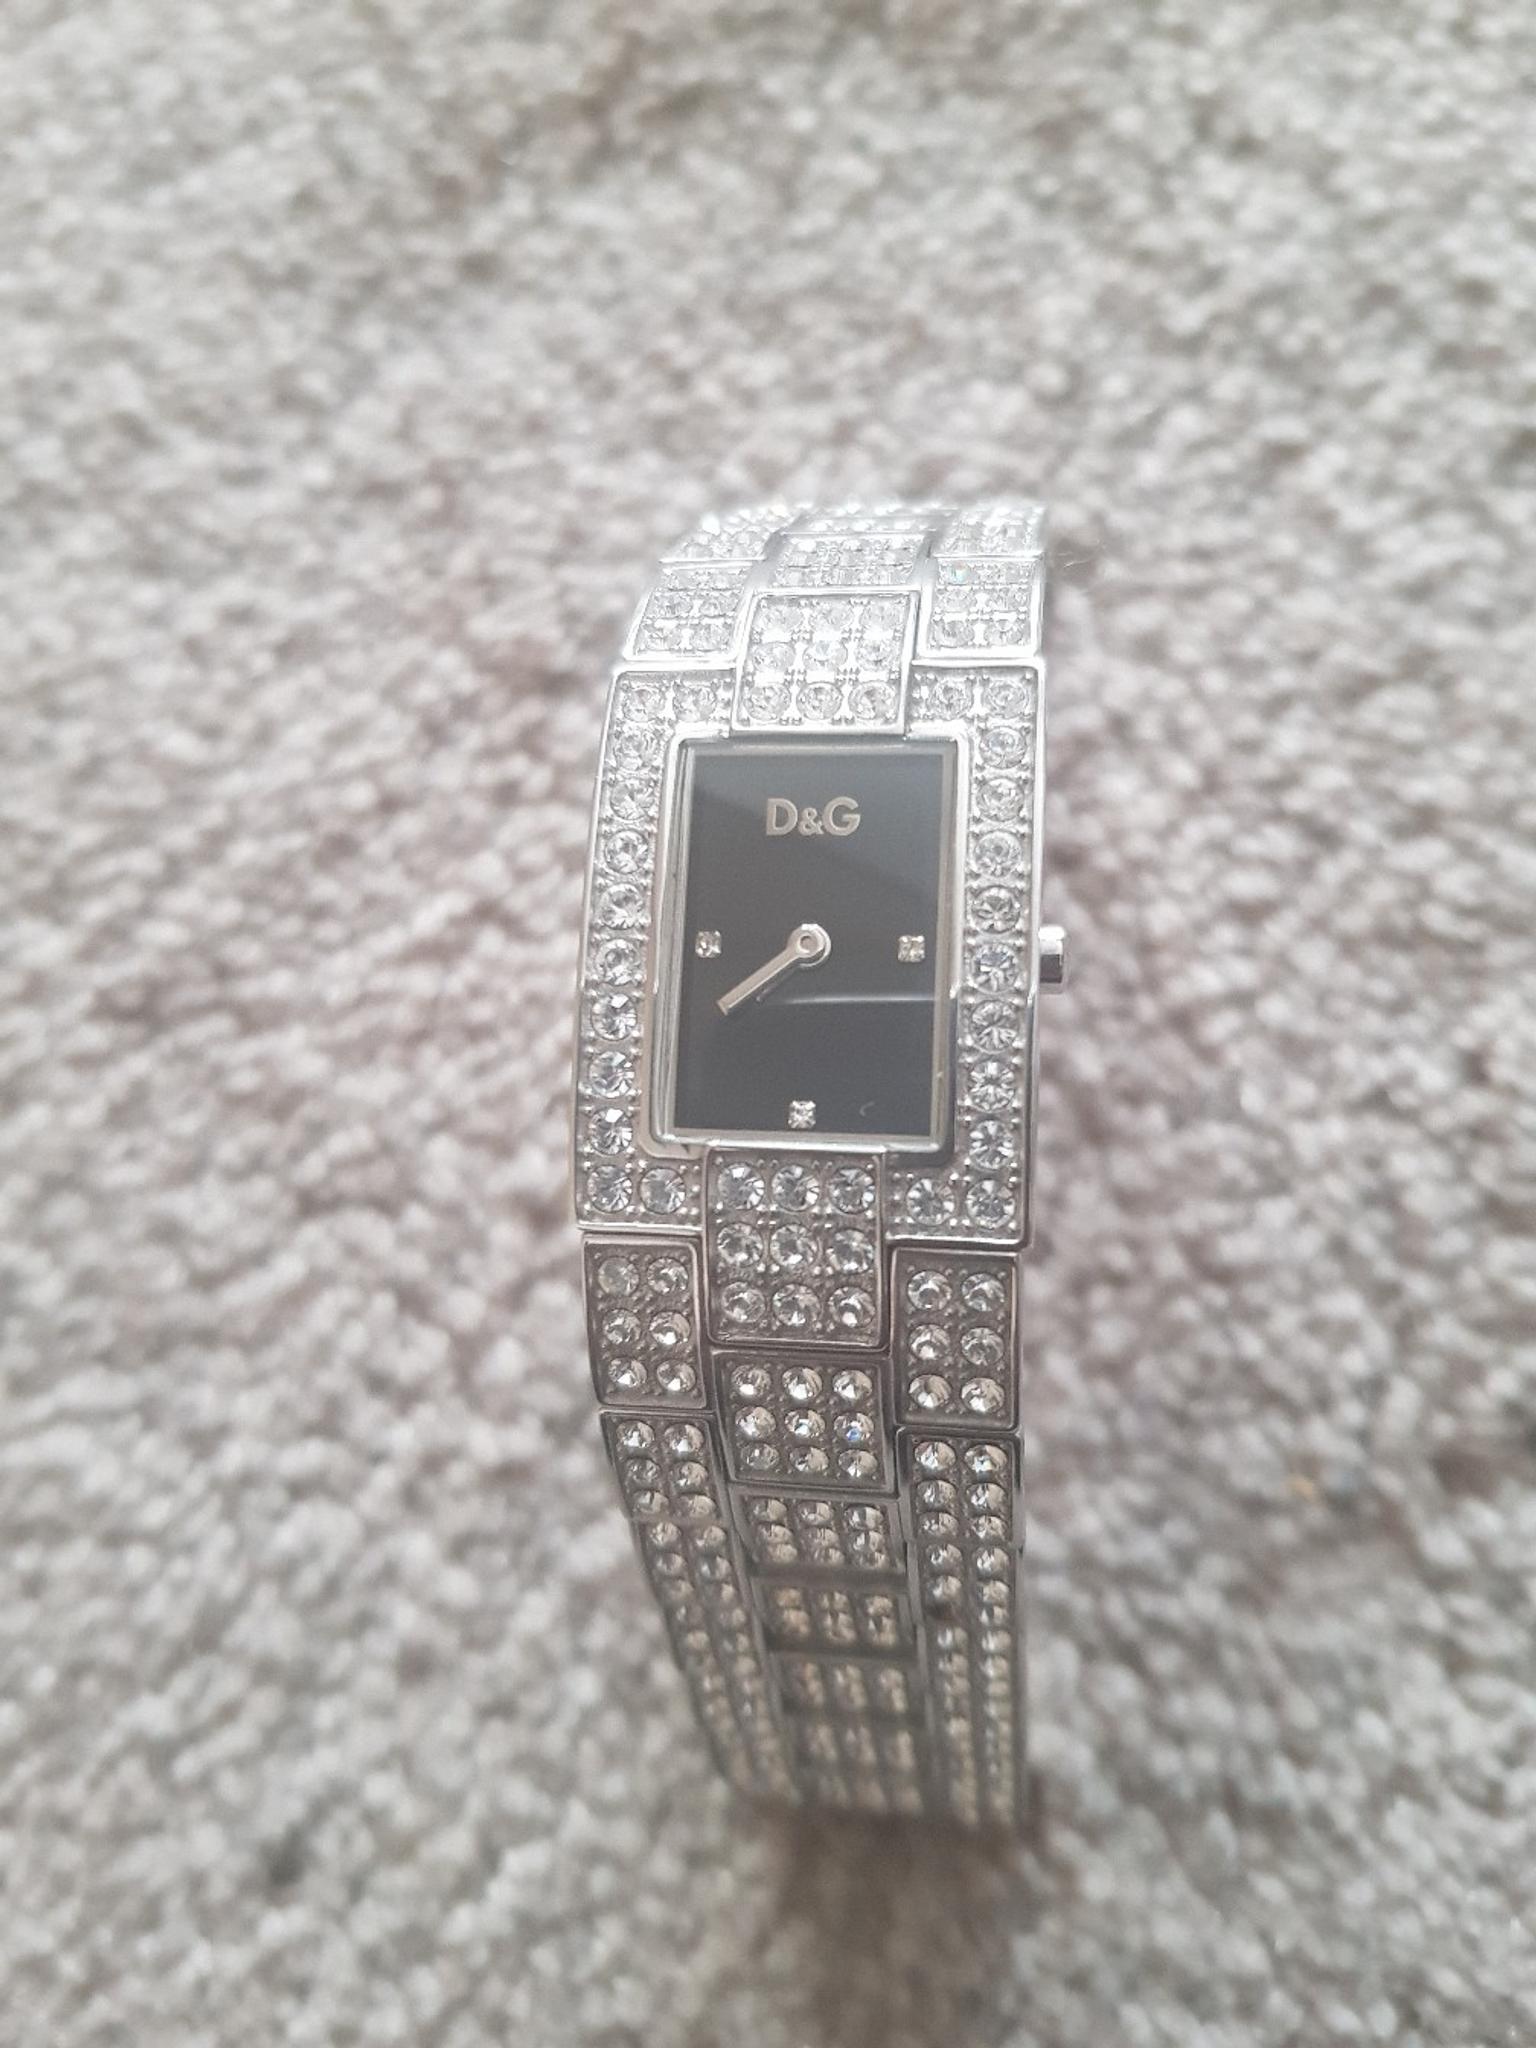 Stunning D\u0026G diamante watch in B28 